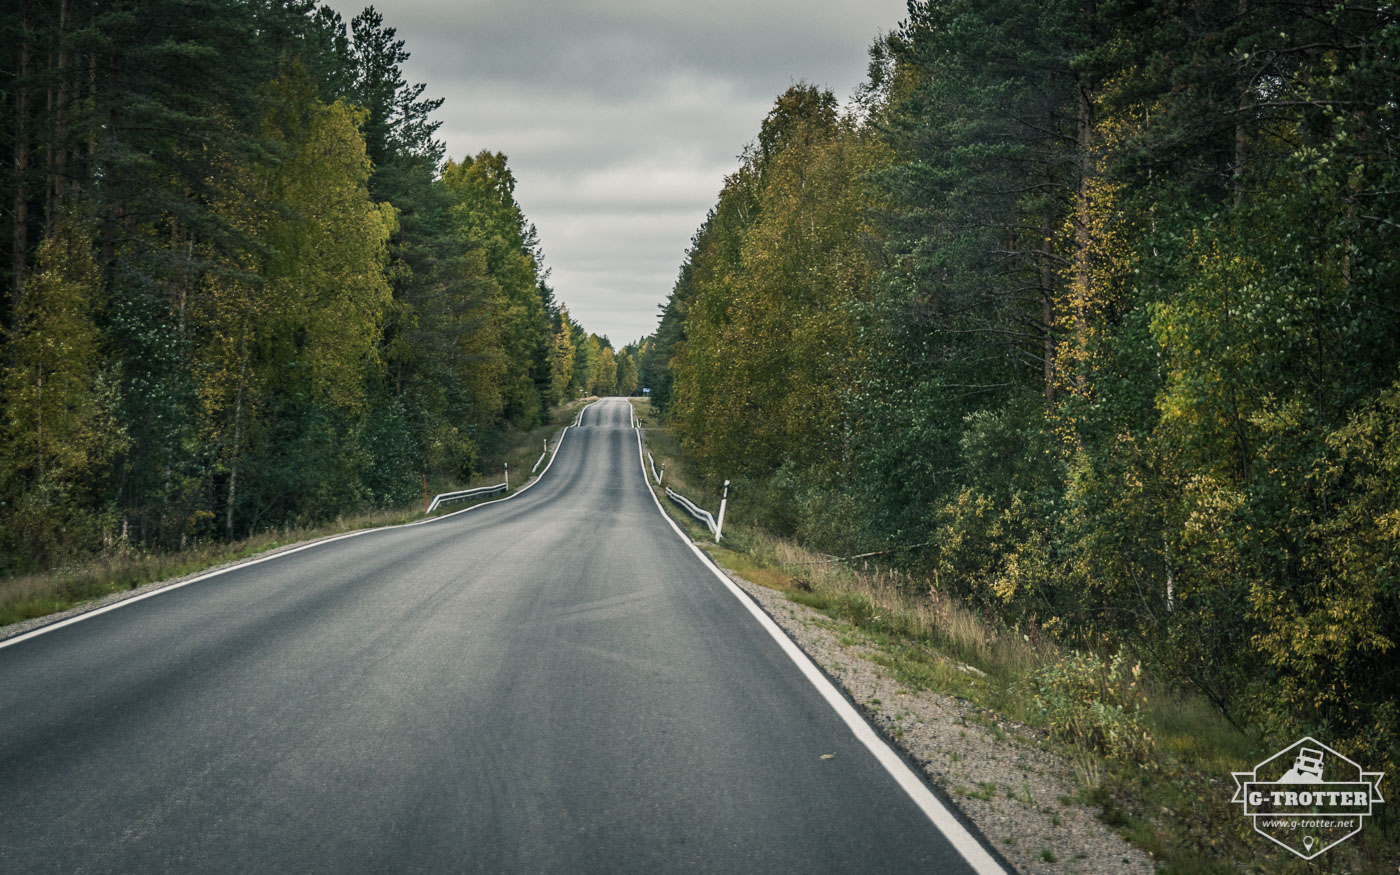 Bild 6 der Bildergalerie “Straßen von Finnland”